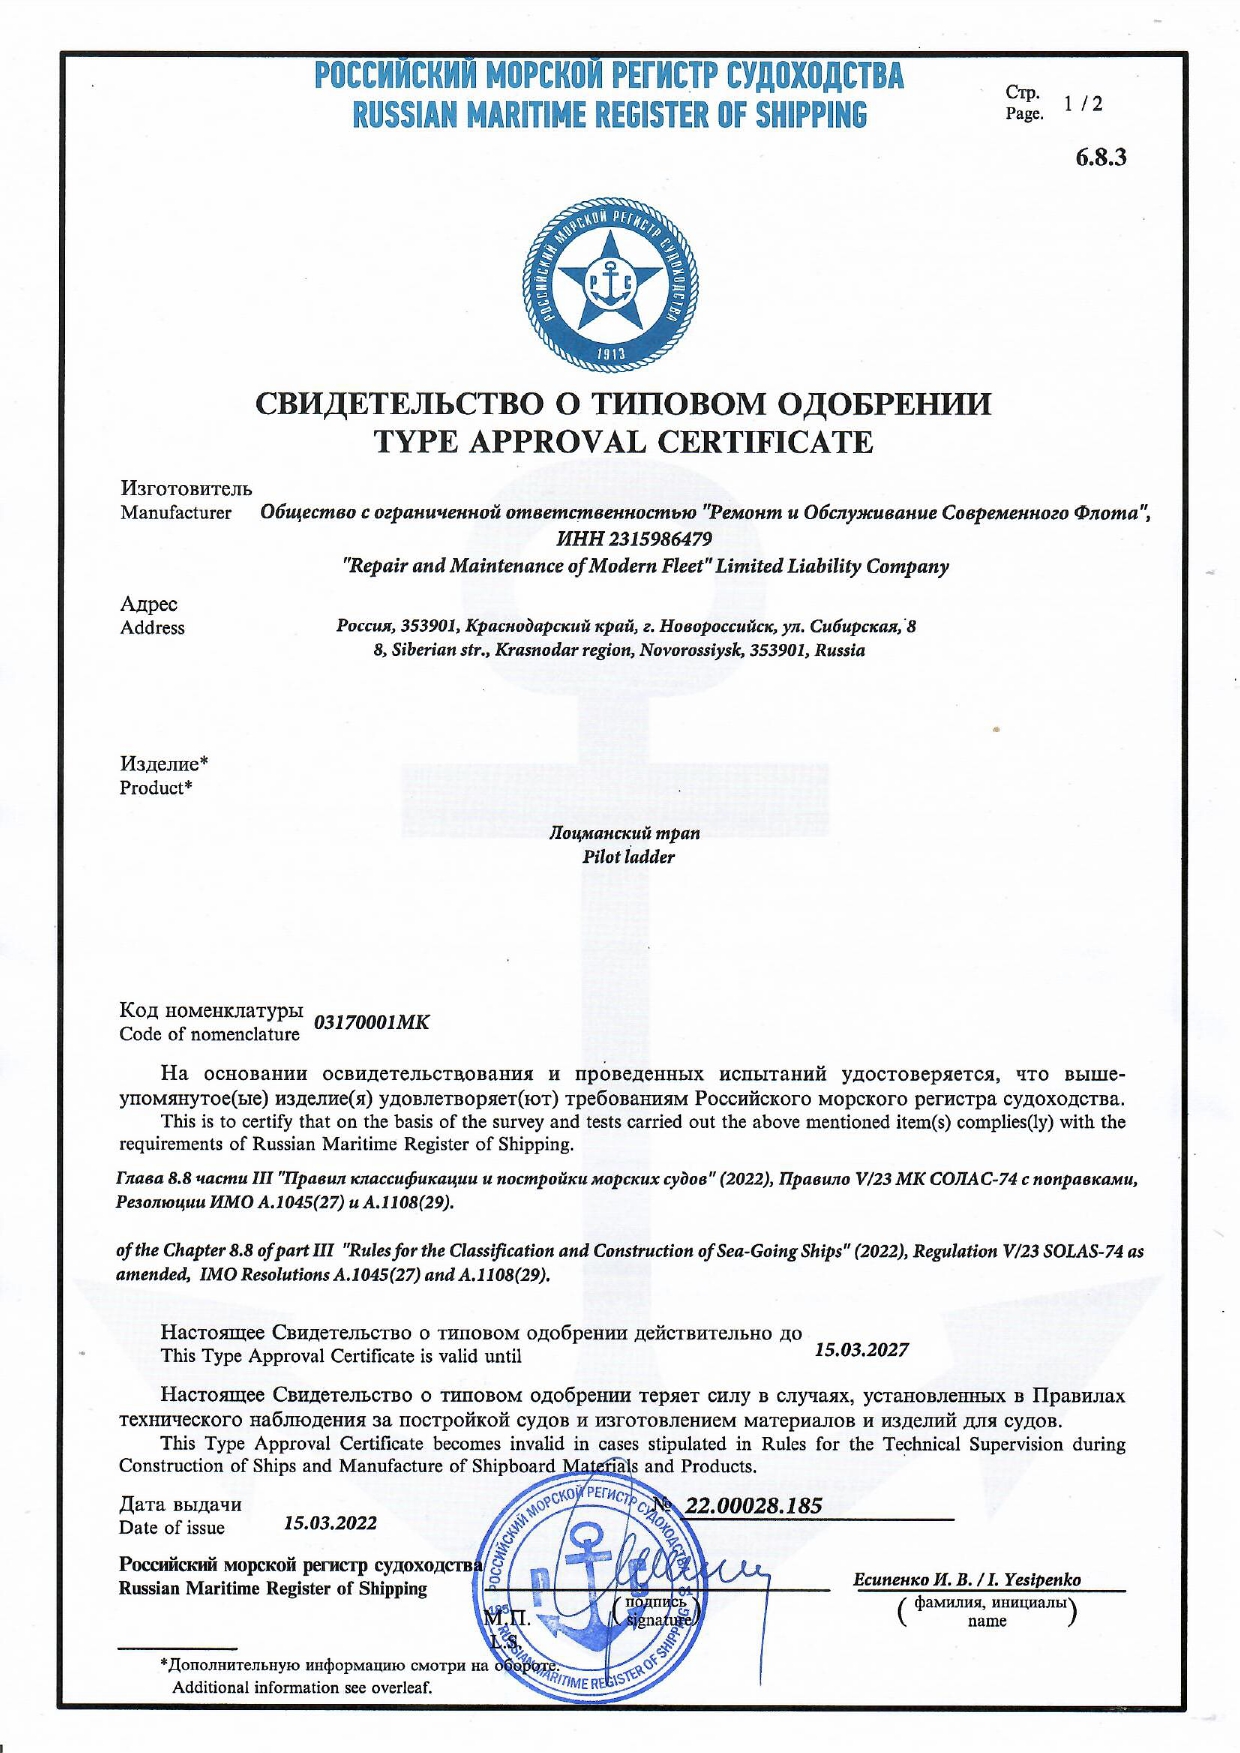 Получен сертификат РМРС на изготовление лоцманских штормтрапов